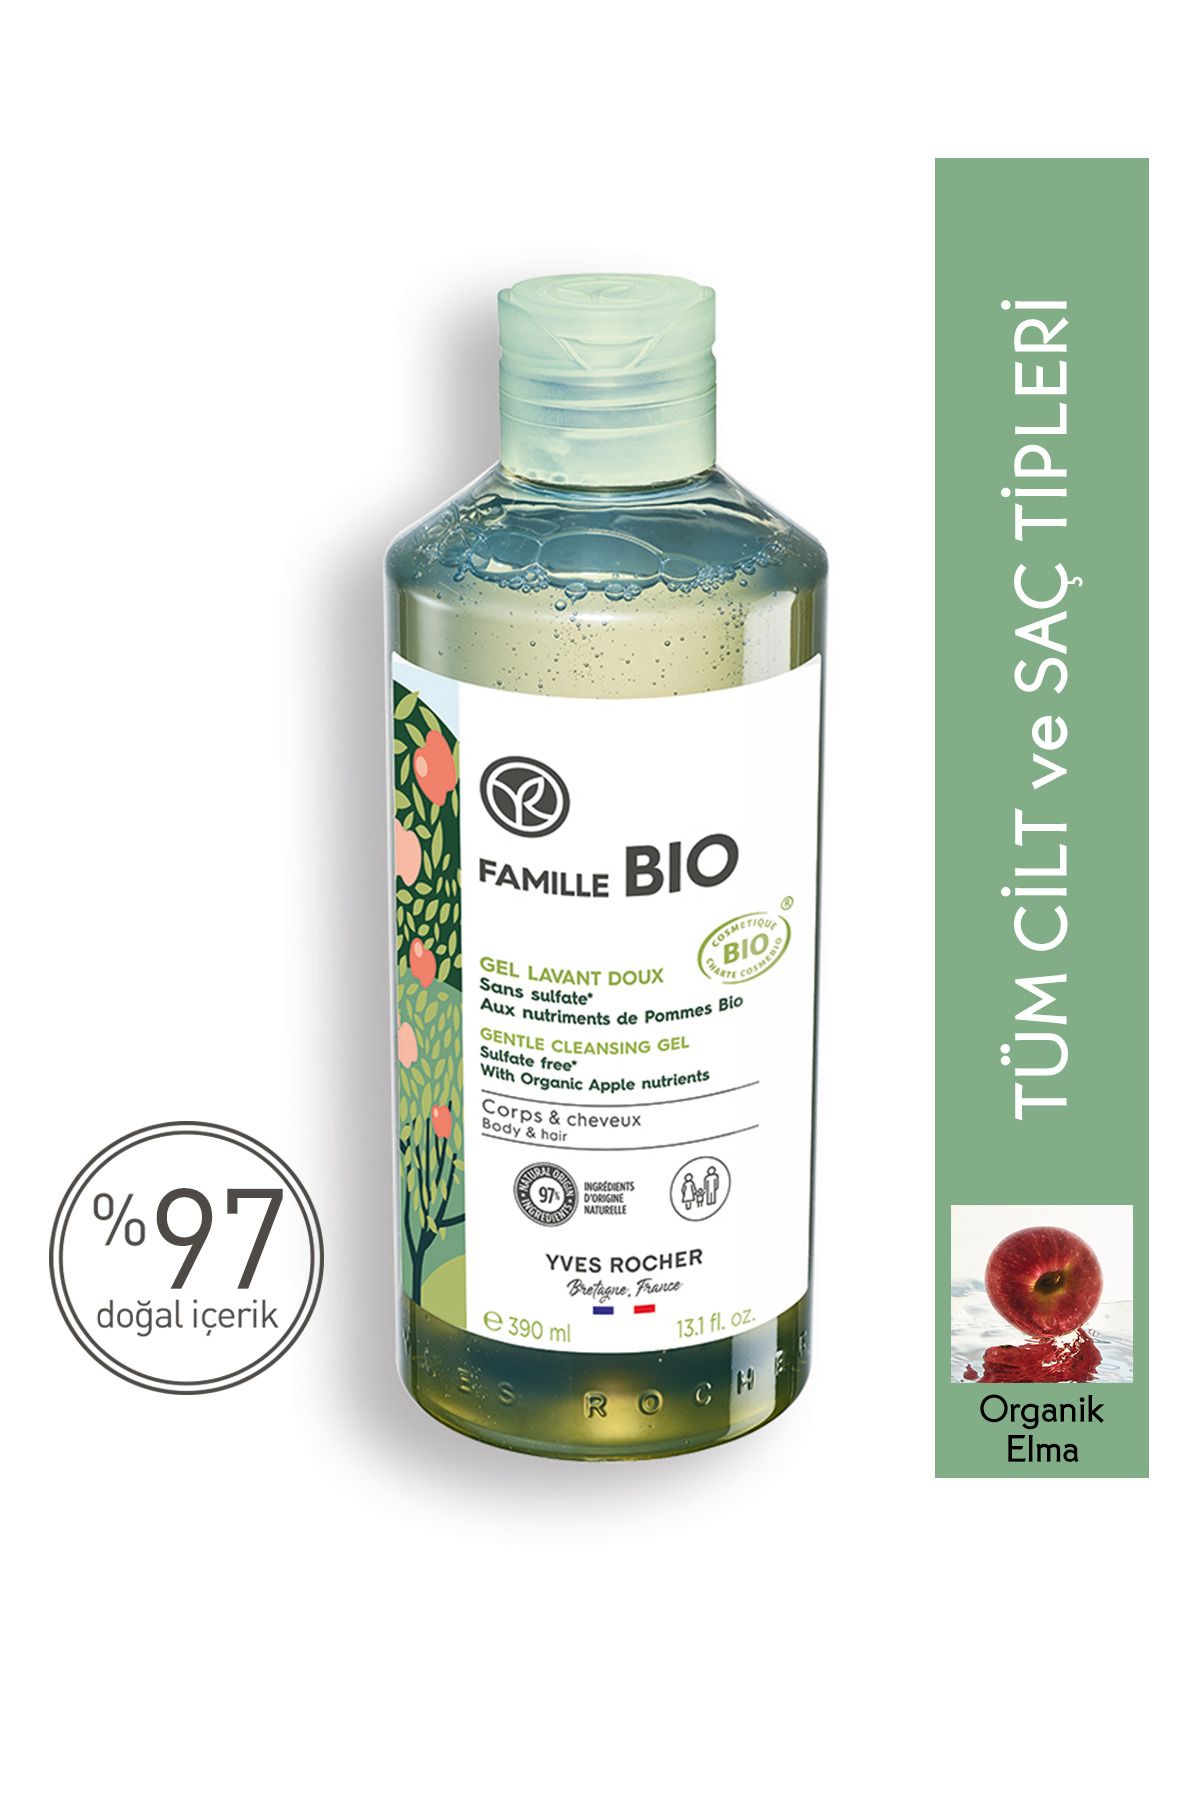 Yves Rocher Tüm Aile Için Organik Sertifikalı Famille Bio Saç Ve Vücut Şampuanı-390 Ml-90686